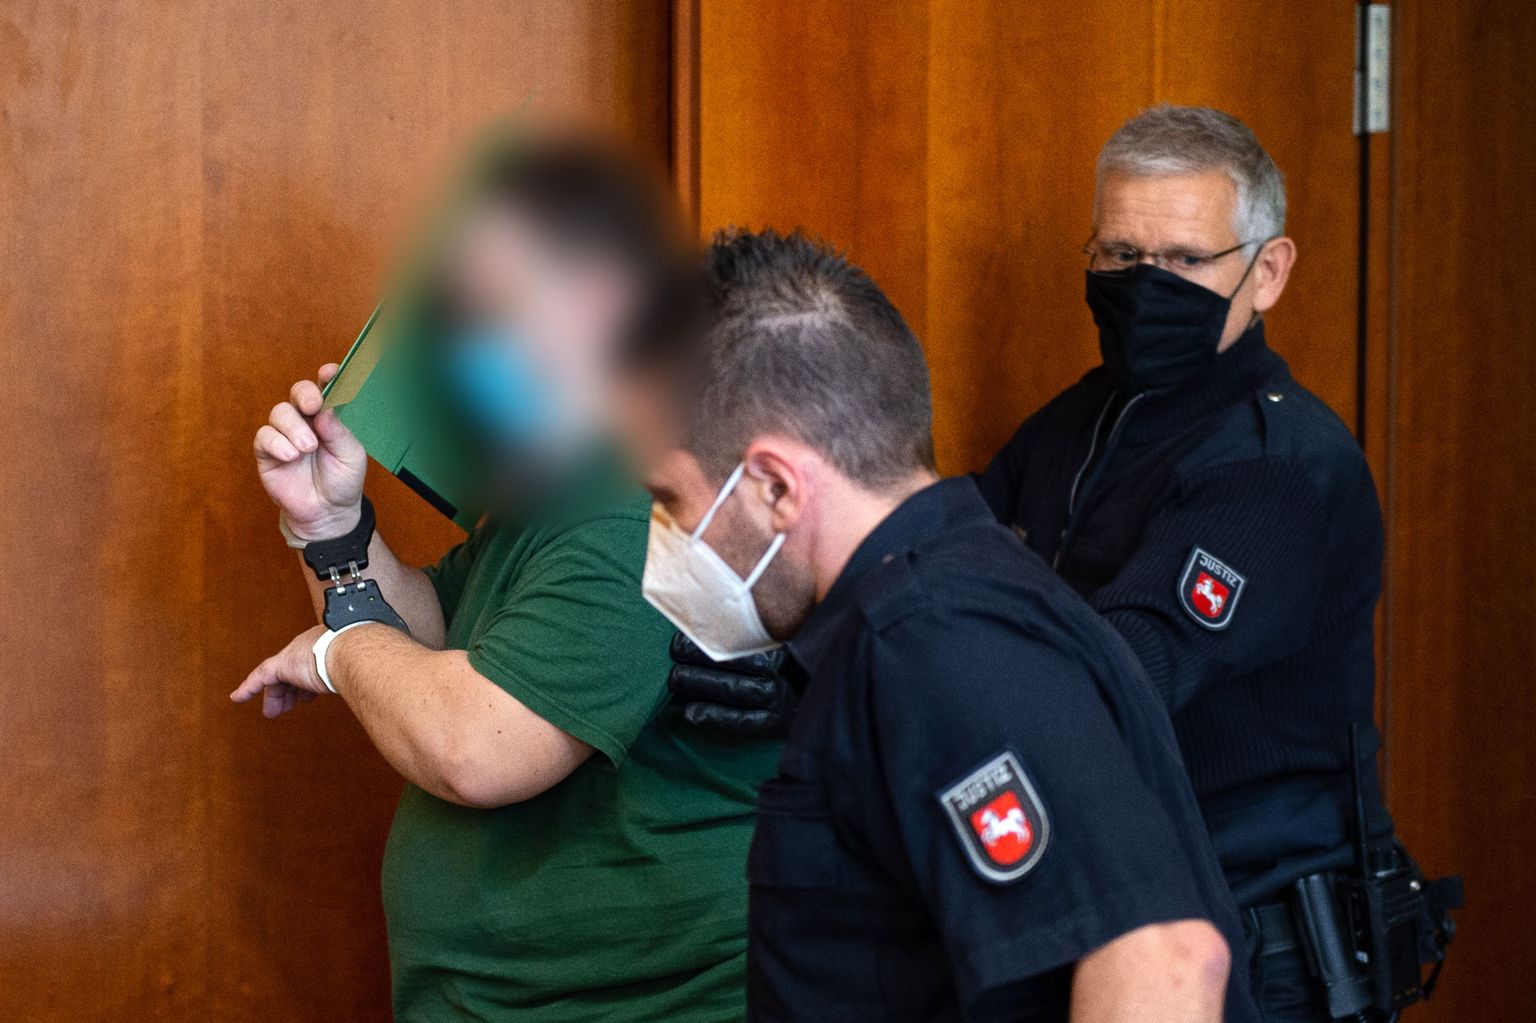 Saksamaal 3. septembril kohtu ette astunud meest süüdistatakse muuhulgas laste ja noorte seksuaalses väärkohtlemises. Mees püüdis kohtusse tulles oma nägu meedia eest varjata.